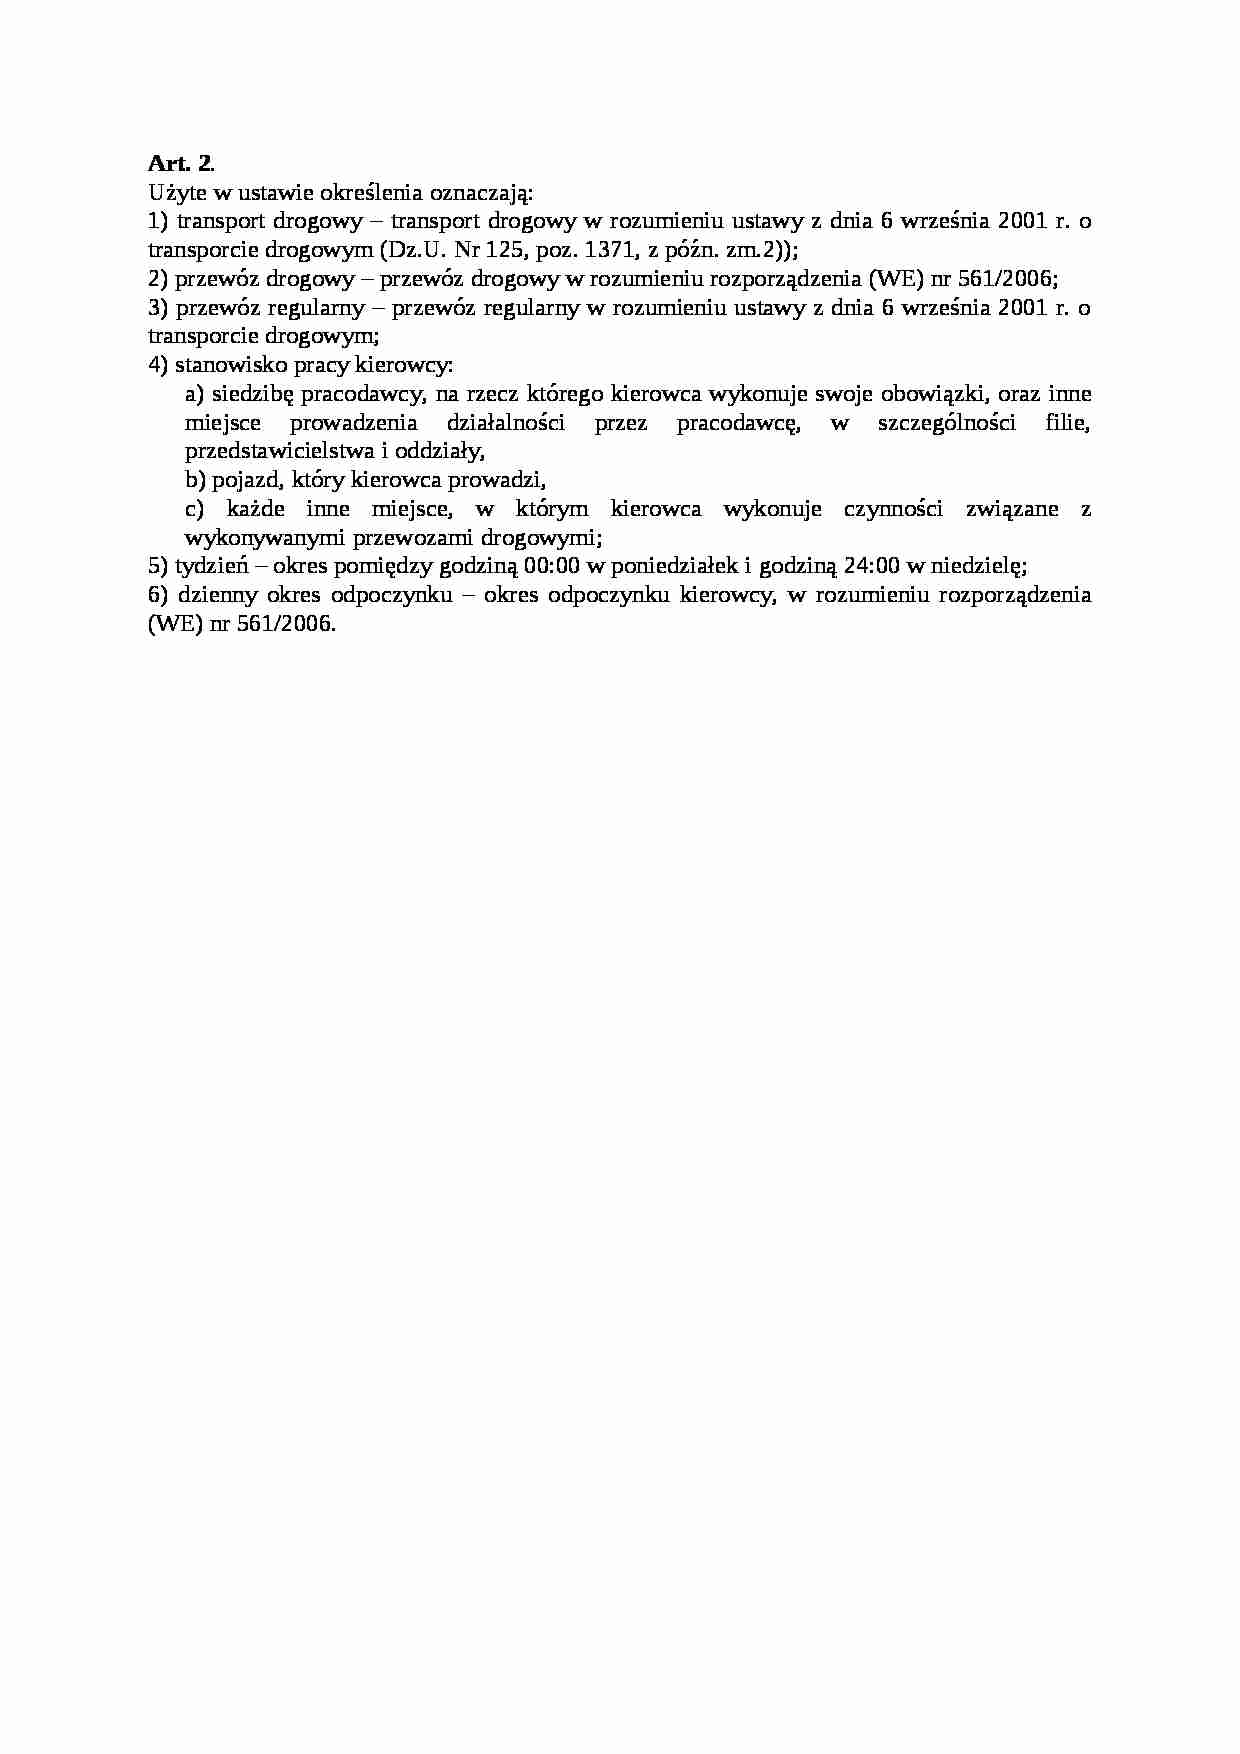 Art. 2. - transport drogowy i przewóz - strona 1